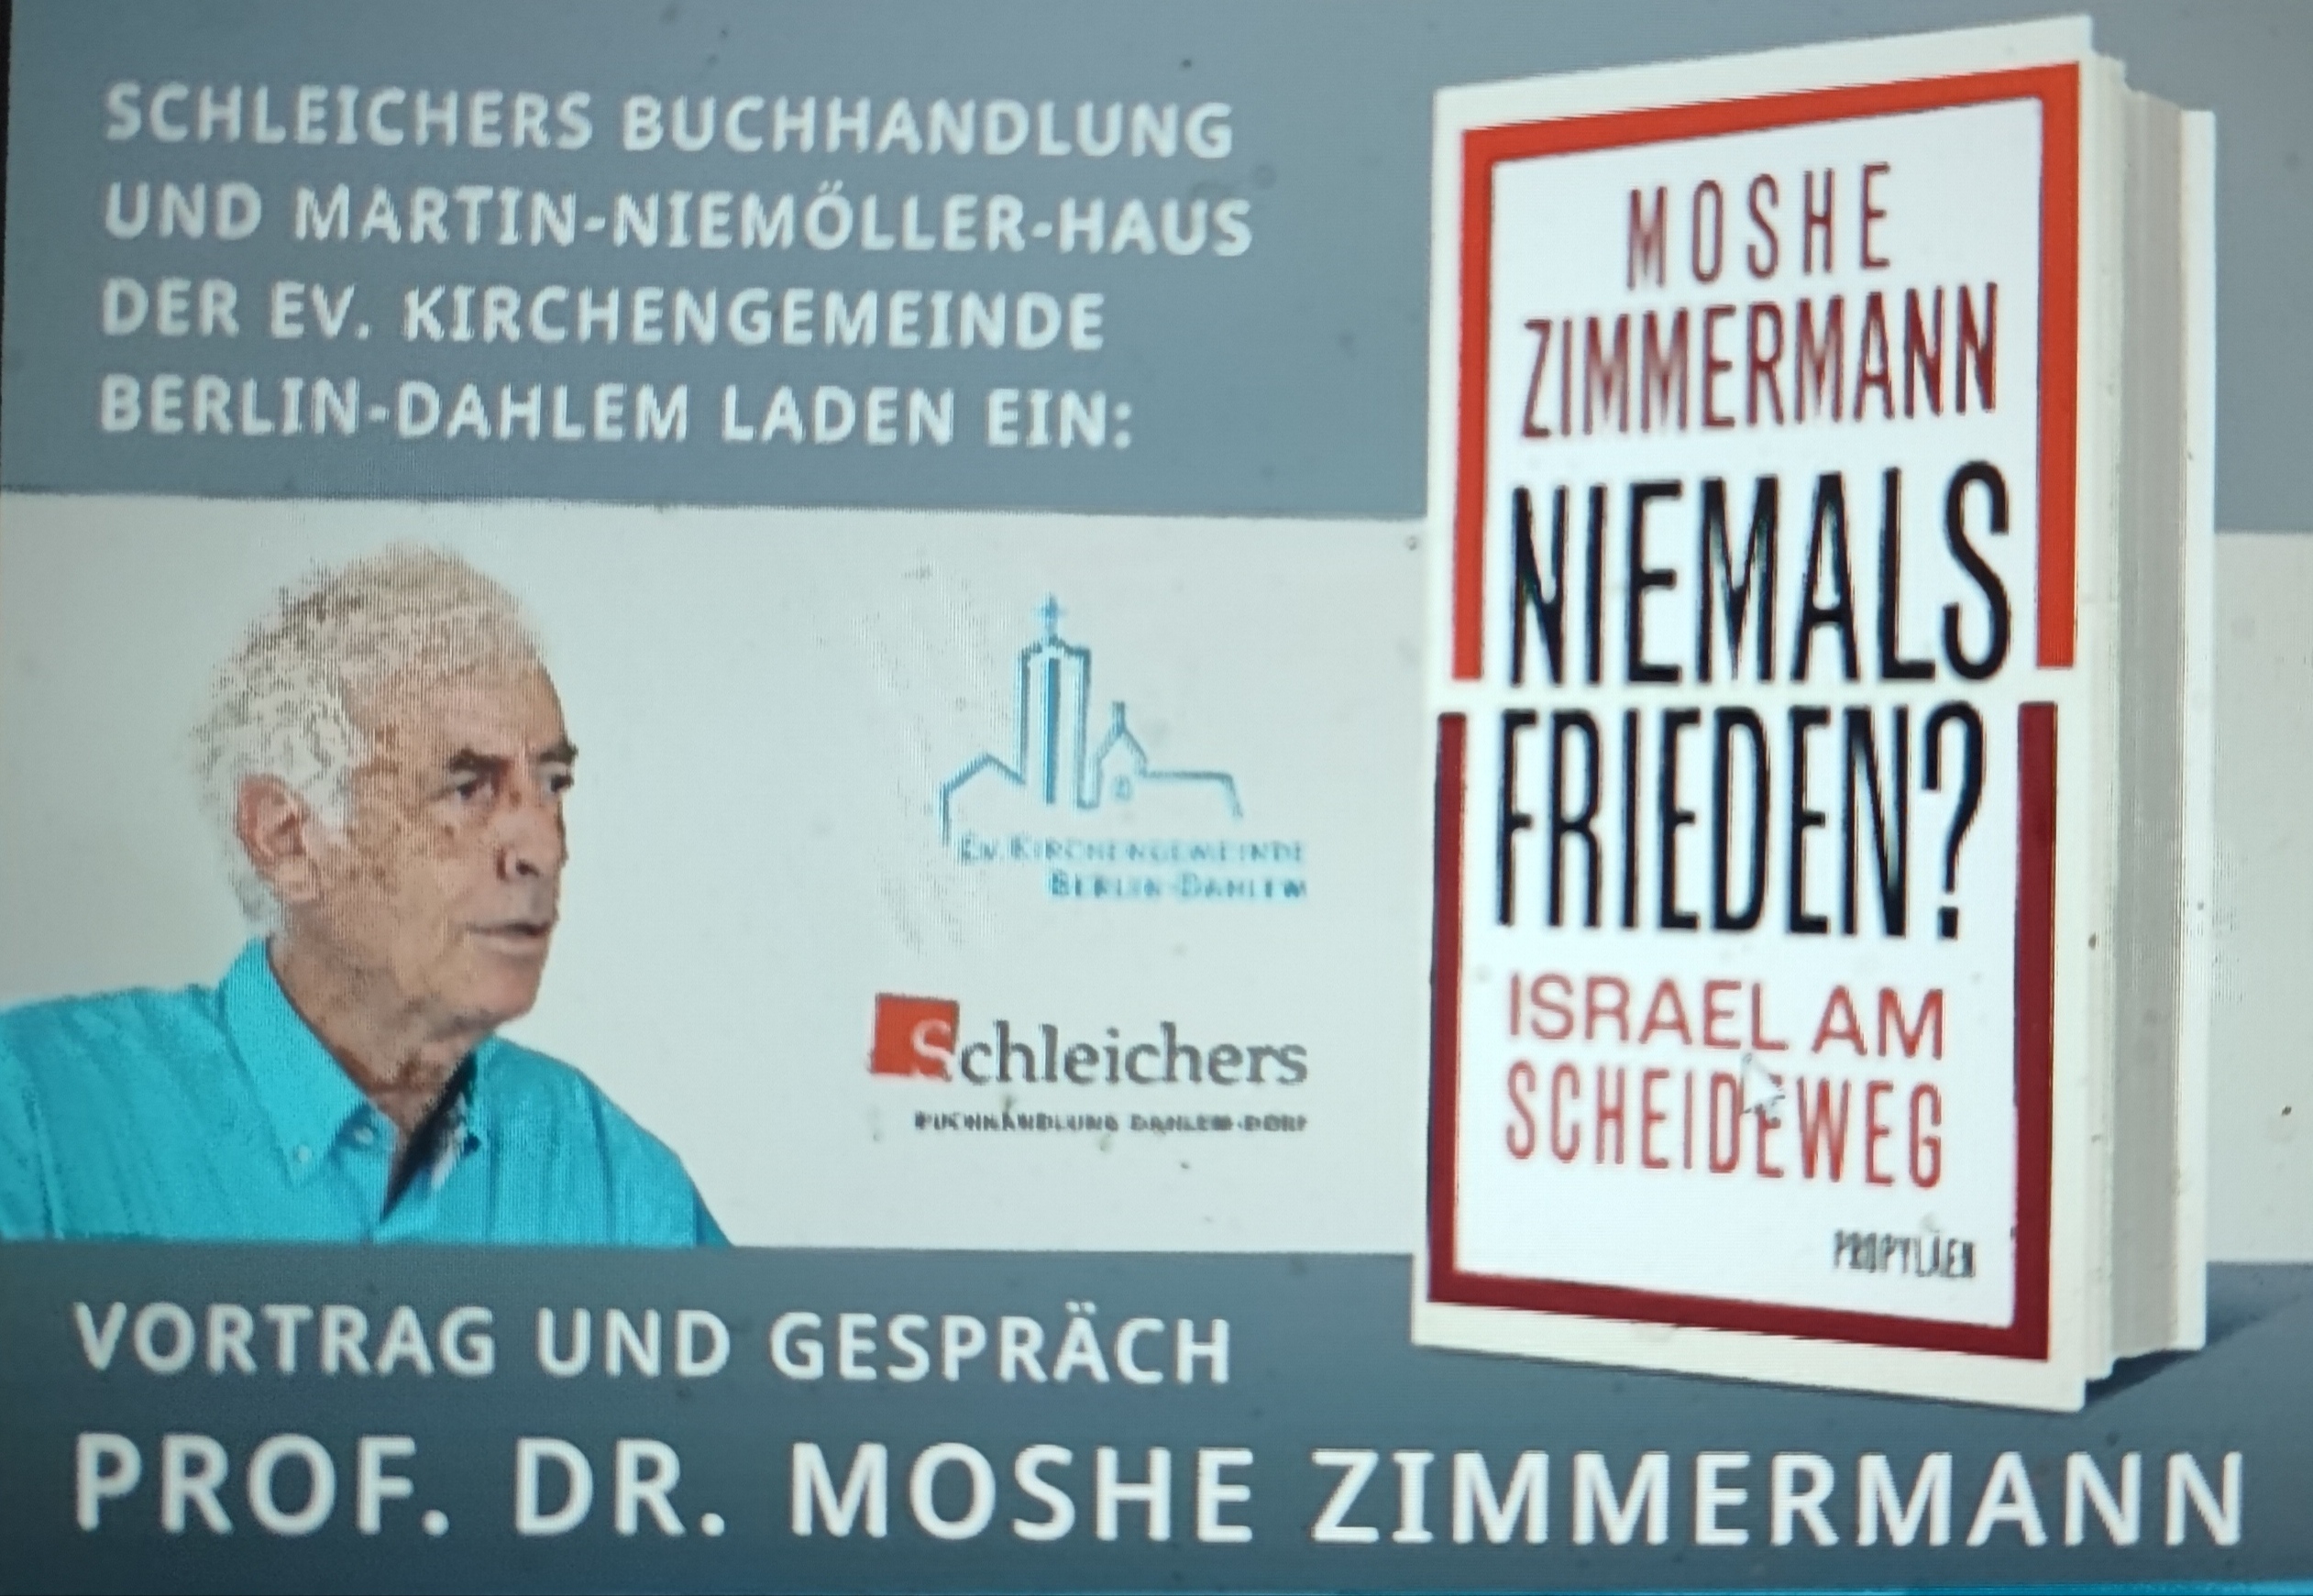 Moshe Zimmermann in Berlin  -Vortrag und Gespräch